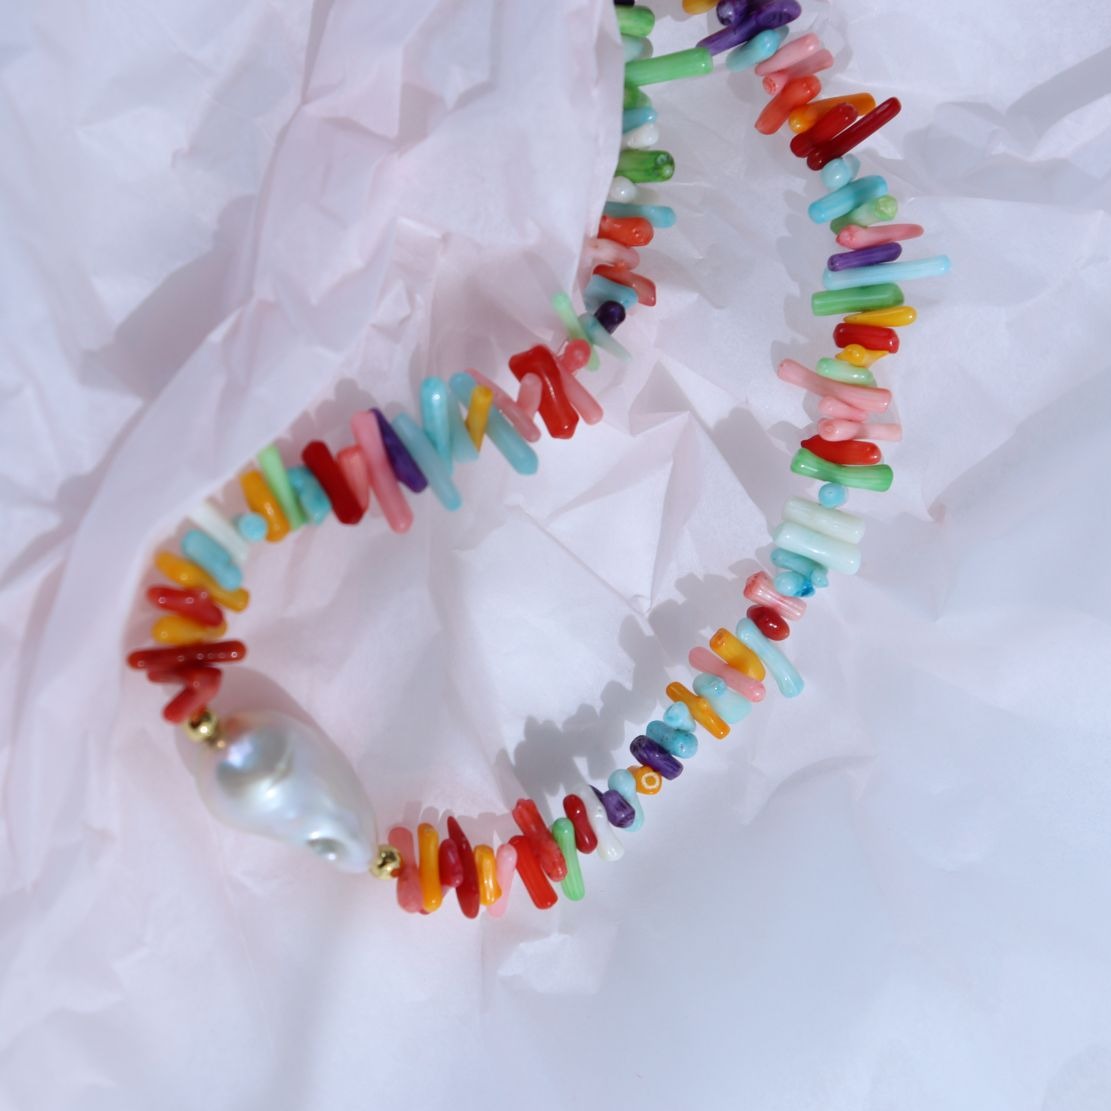 Collar de perlas barrocas con piedras preciosas multicolores irregulares 